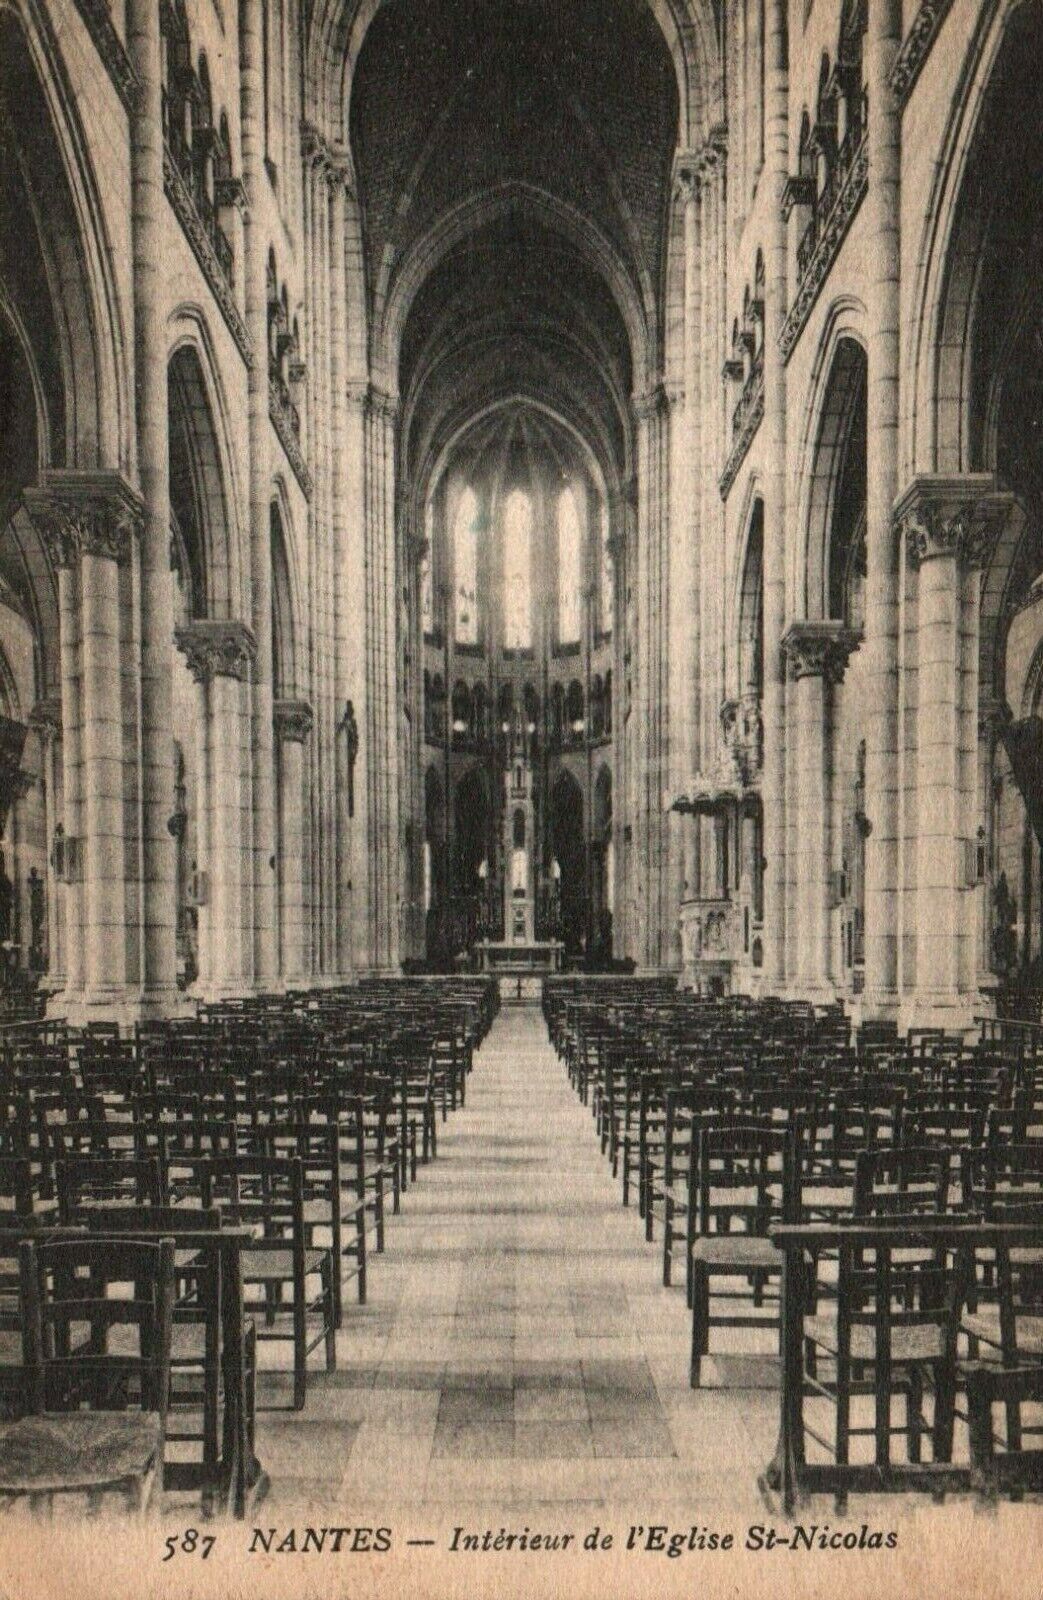 Vintage Postcard - 587 Nantes Interieur de l'Eglise St-Nicolas 1919 SOLDIER MAIL